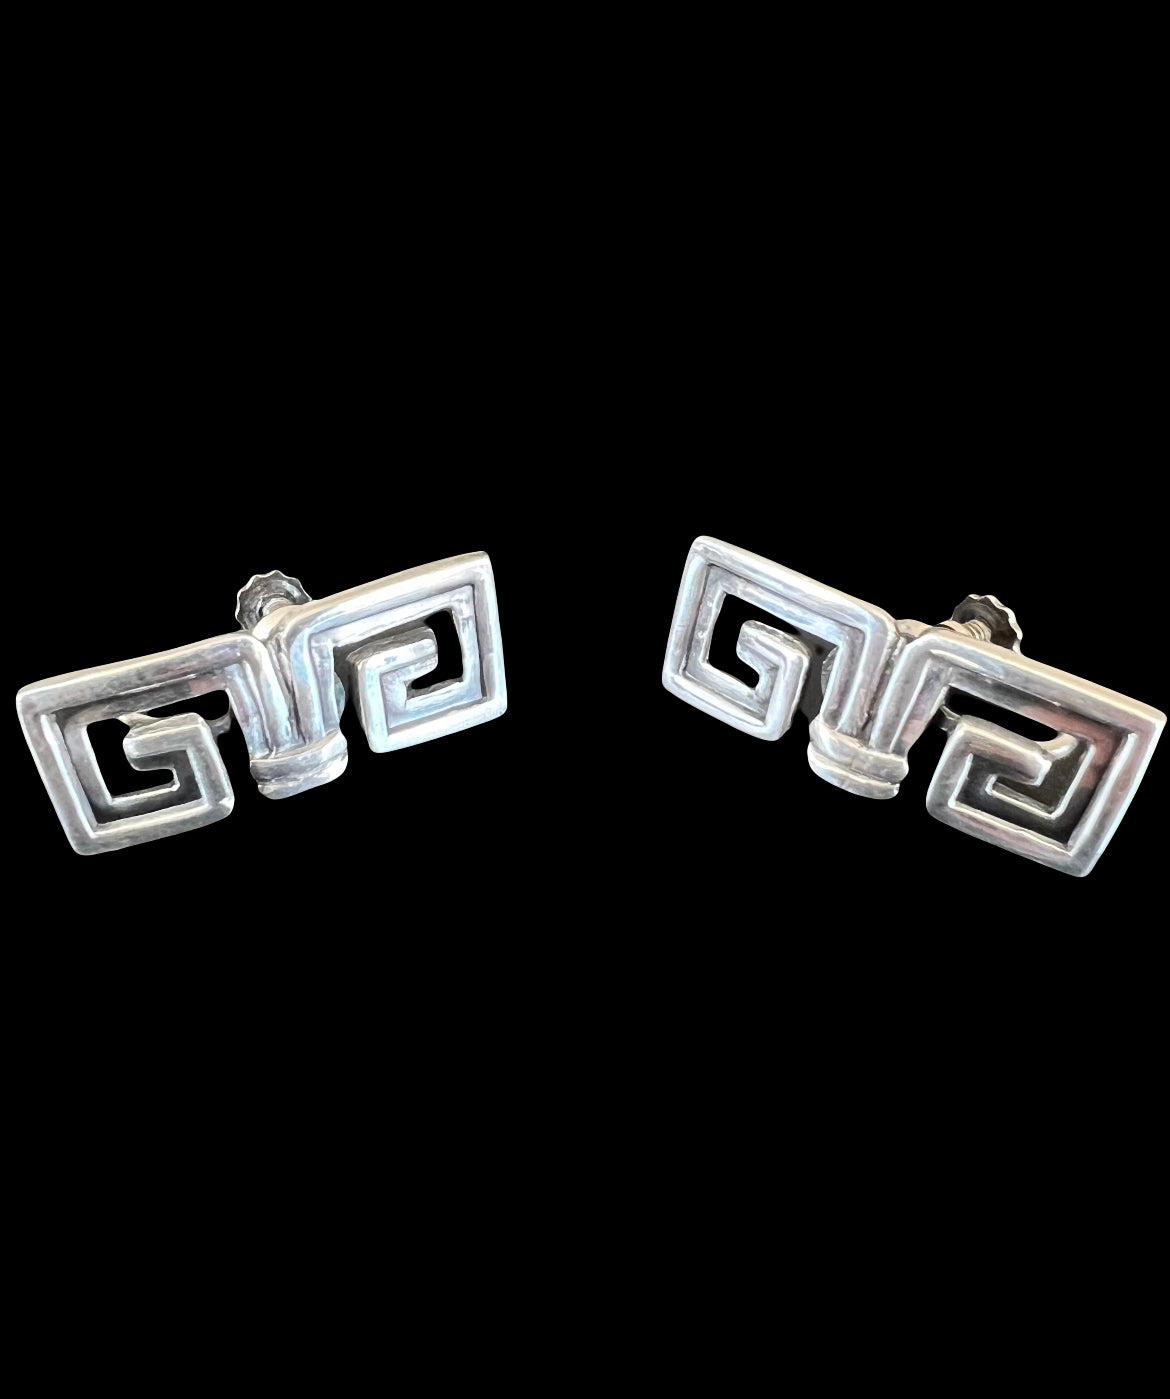 Margot de Taxco Mexican Art Deco Sterling Silver Pre Colombian Greek Key Earrings No. 5112